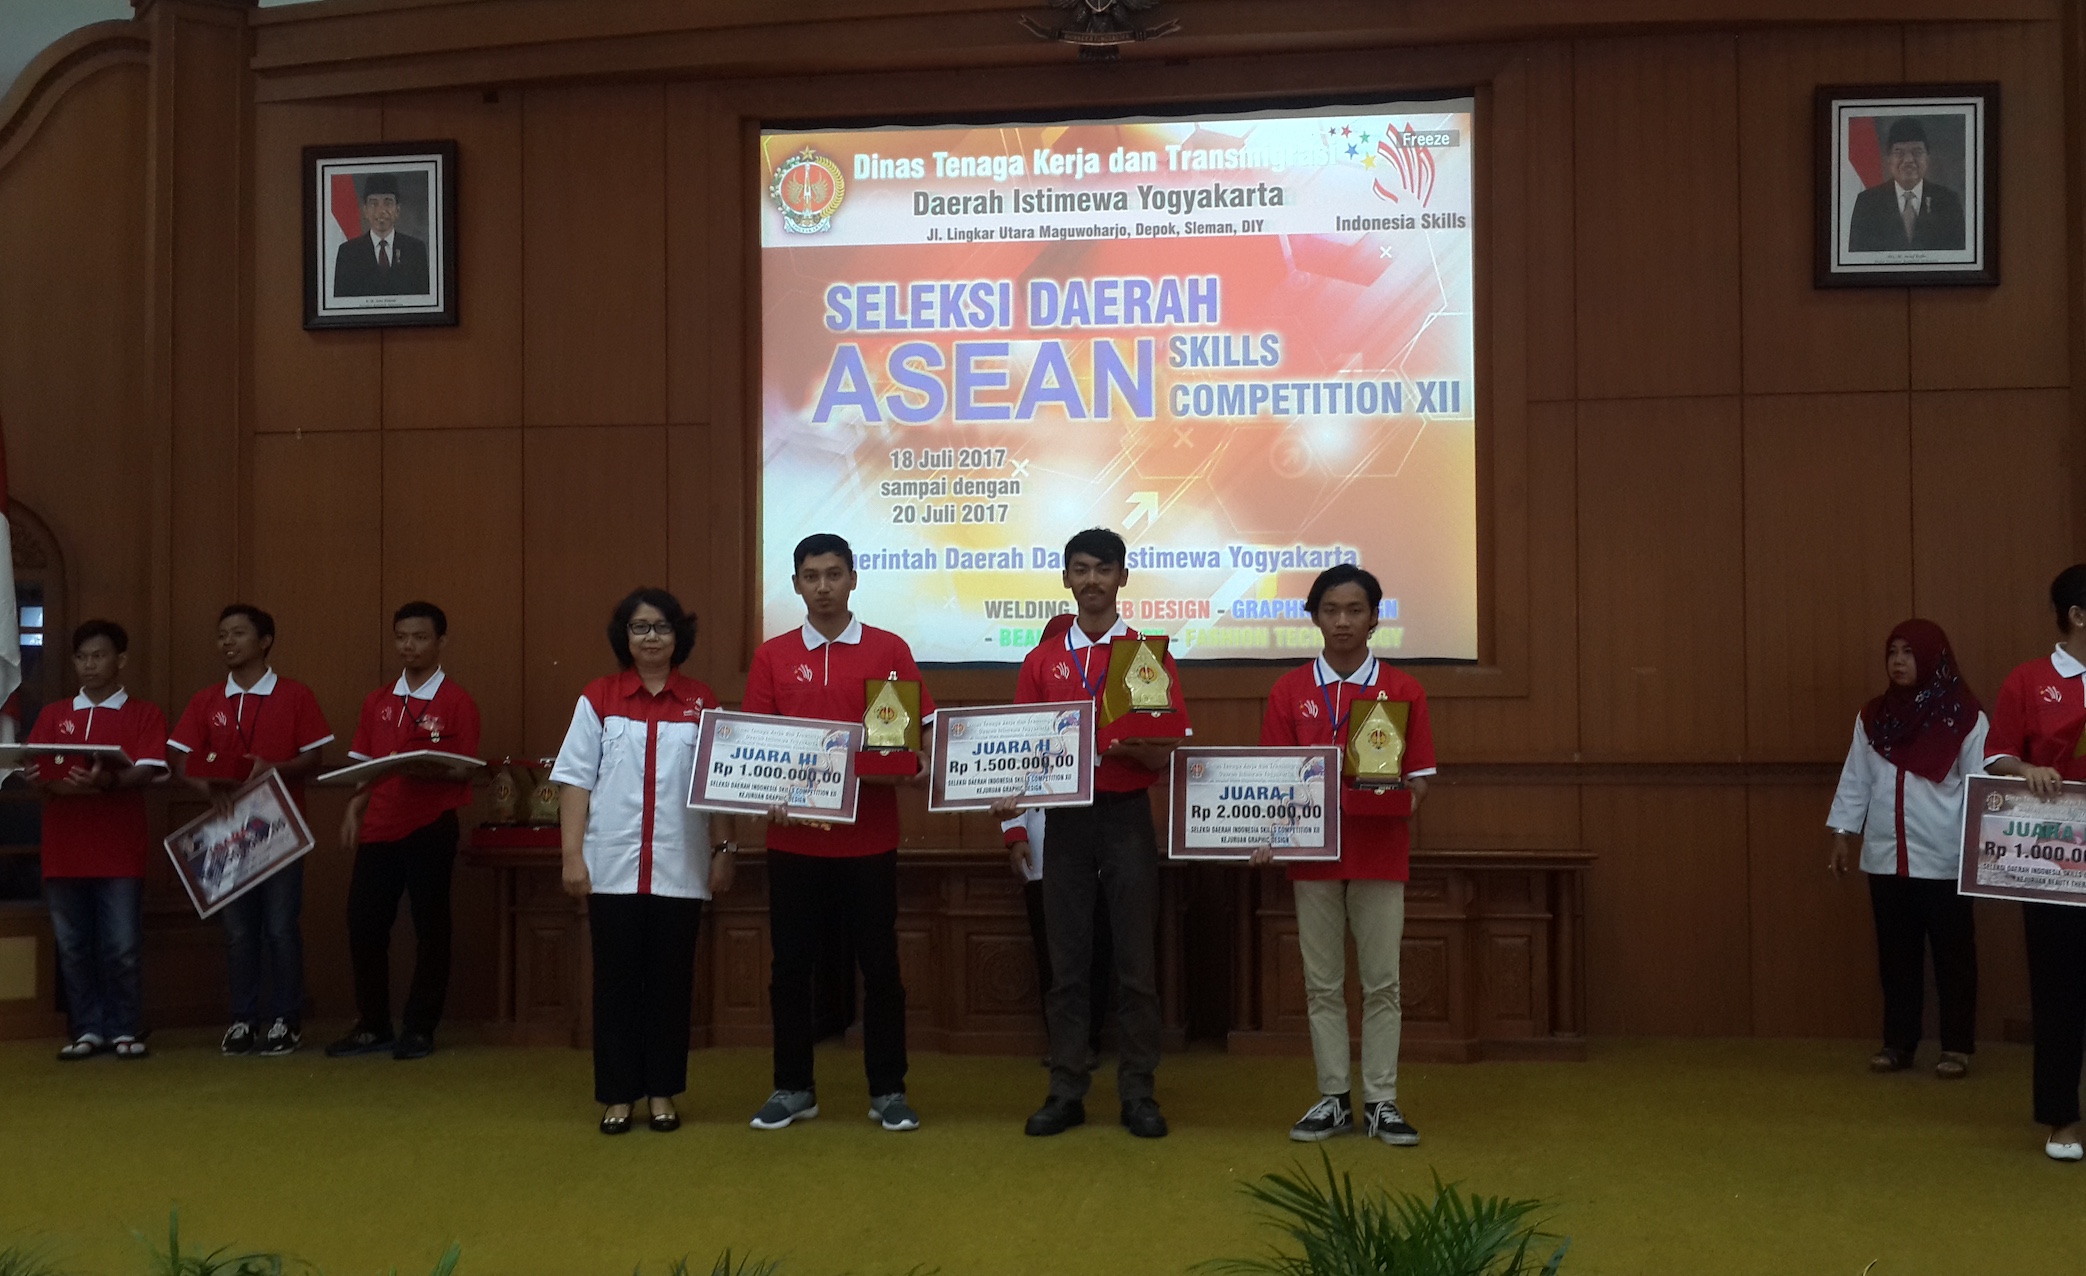 Foto Seleksi Daerah ASEAN Skills Competition XII